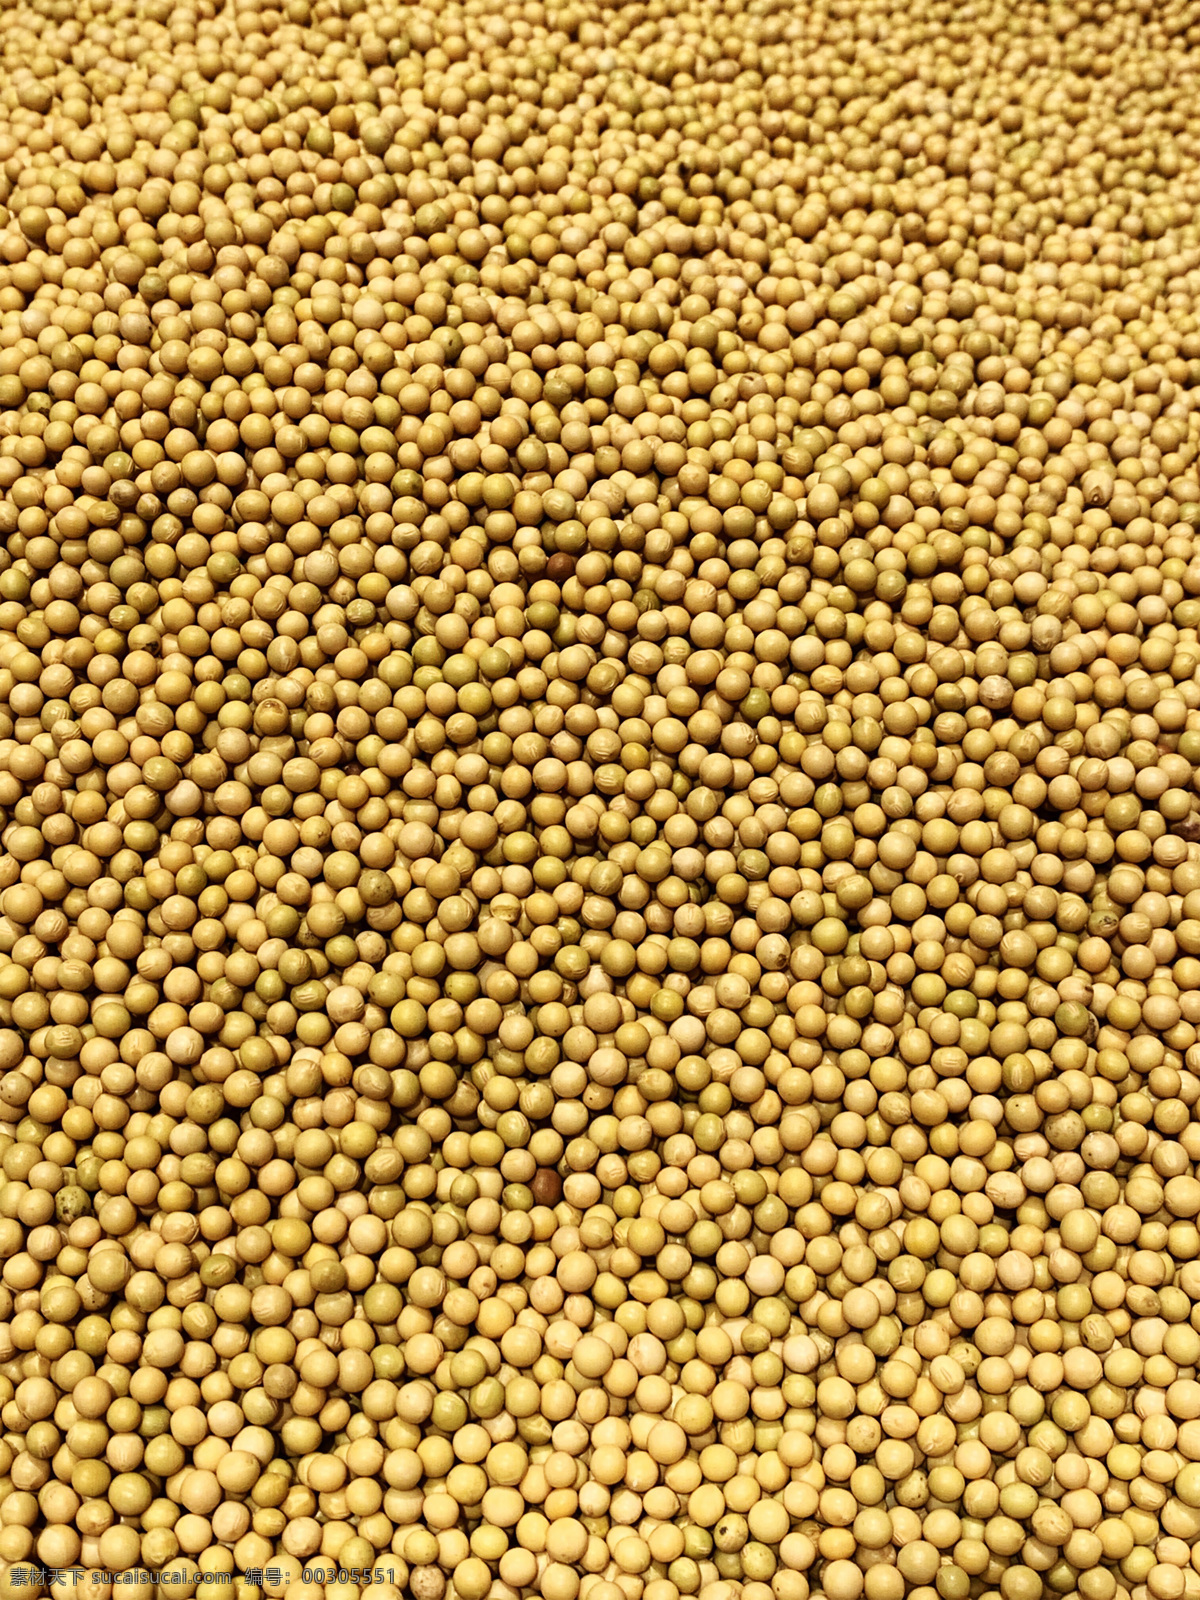 黄豆图片 黄豆 小黄豆 豆子 小豆子 豆类 农产品 干货 干黄豆 生物世界 蔬菜